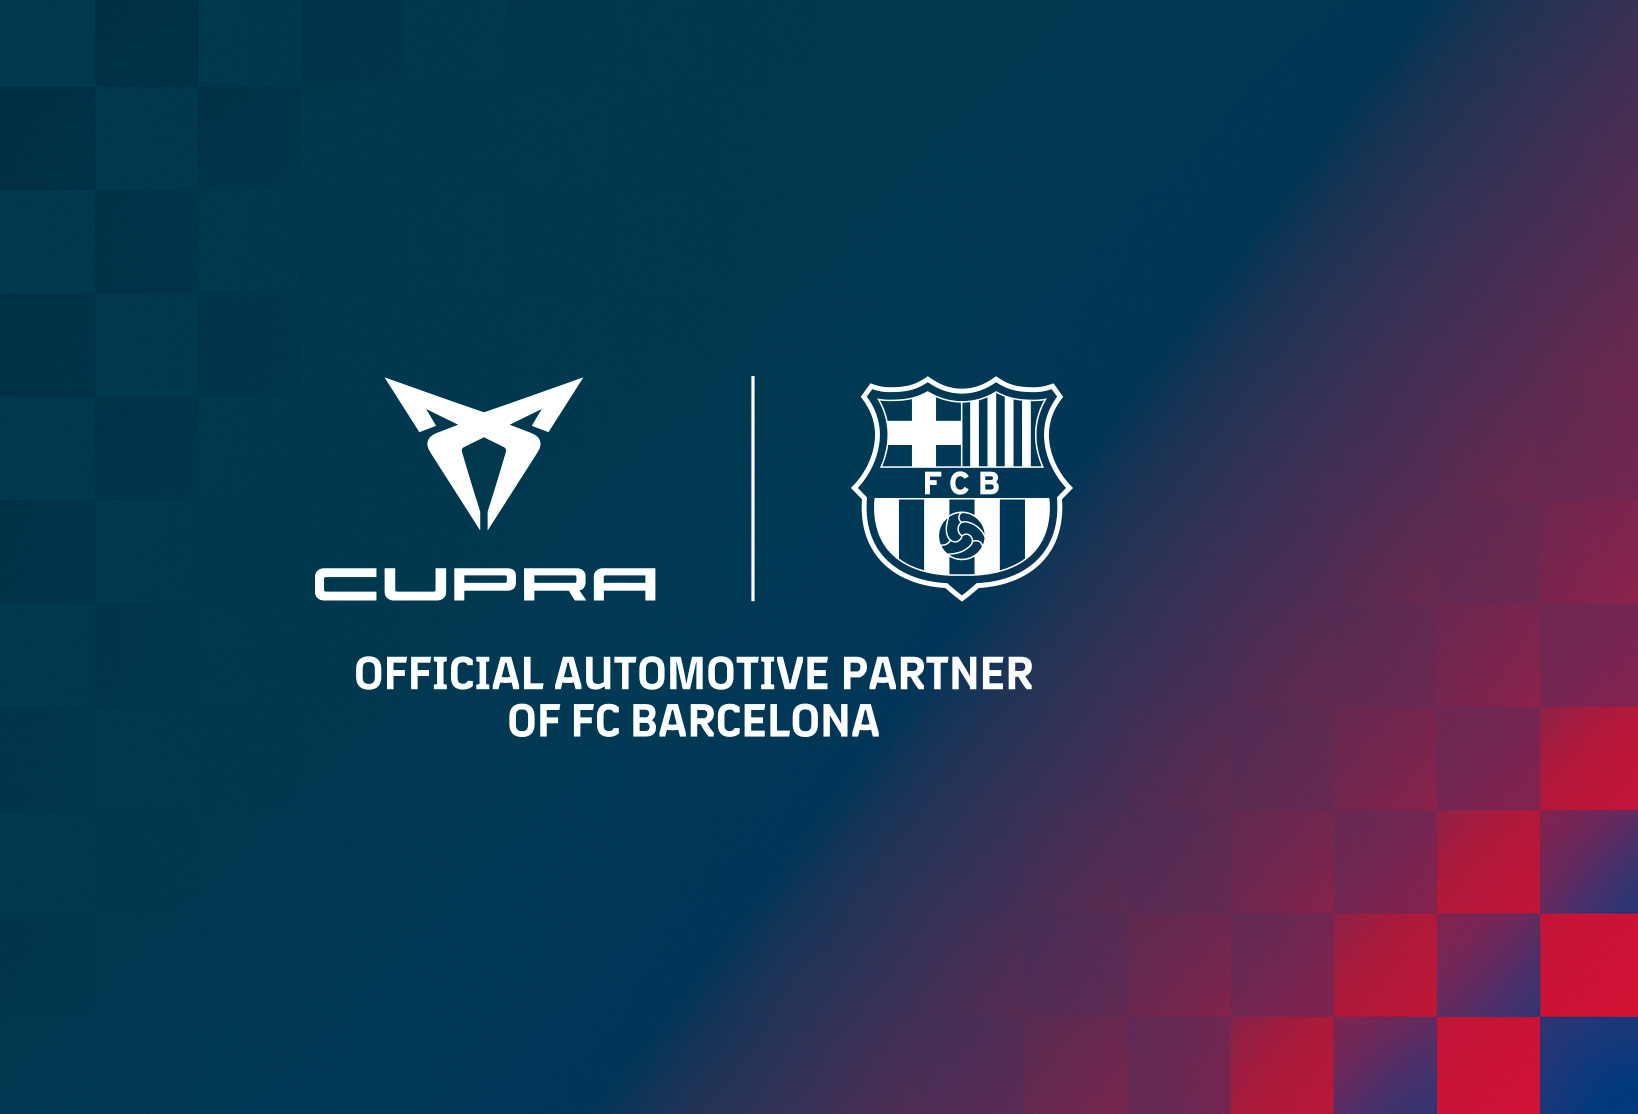 CUPRA s’associe au FC Barcelone sur les cinq prochaines saisons